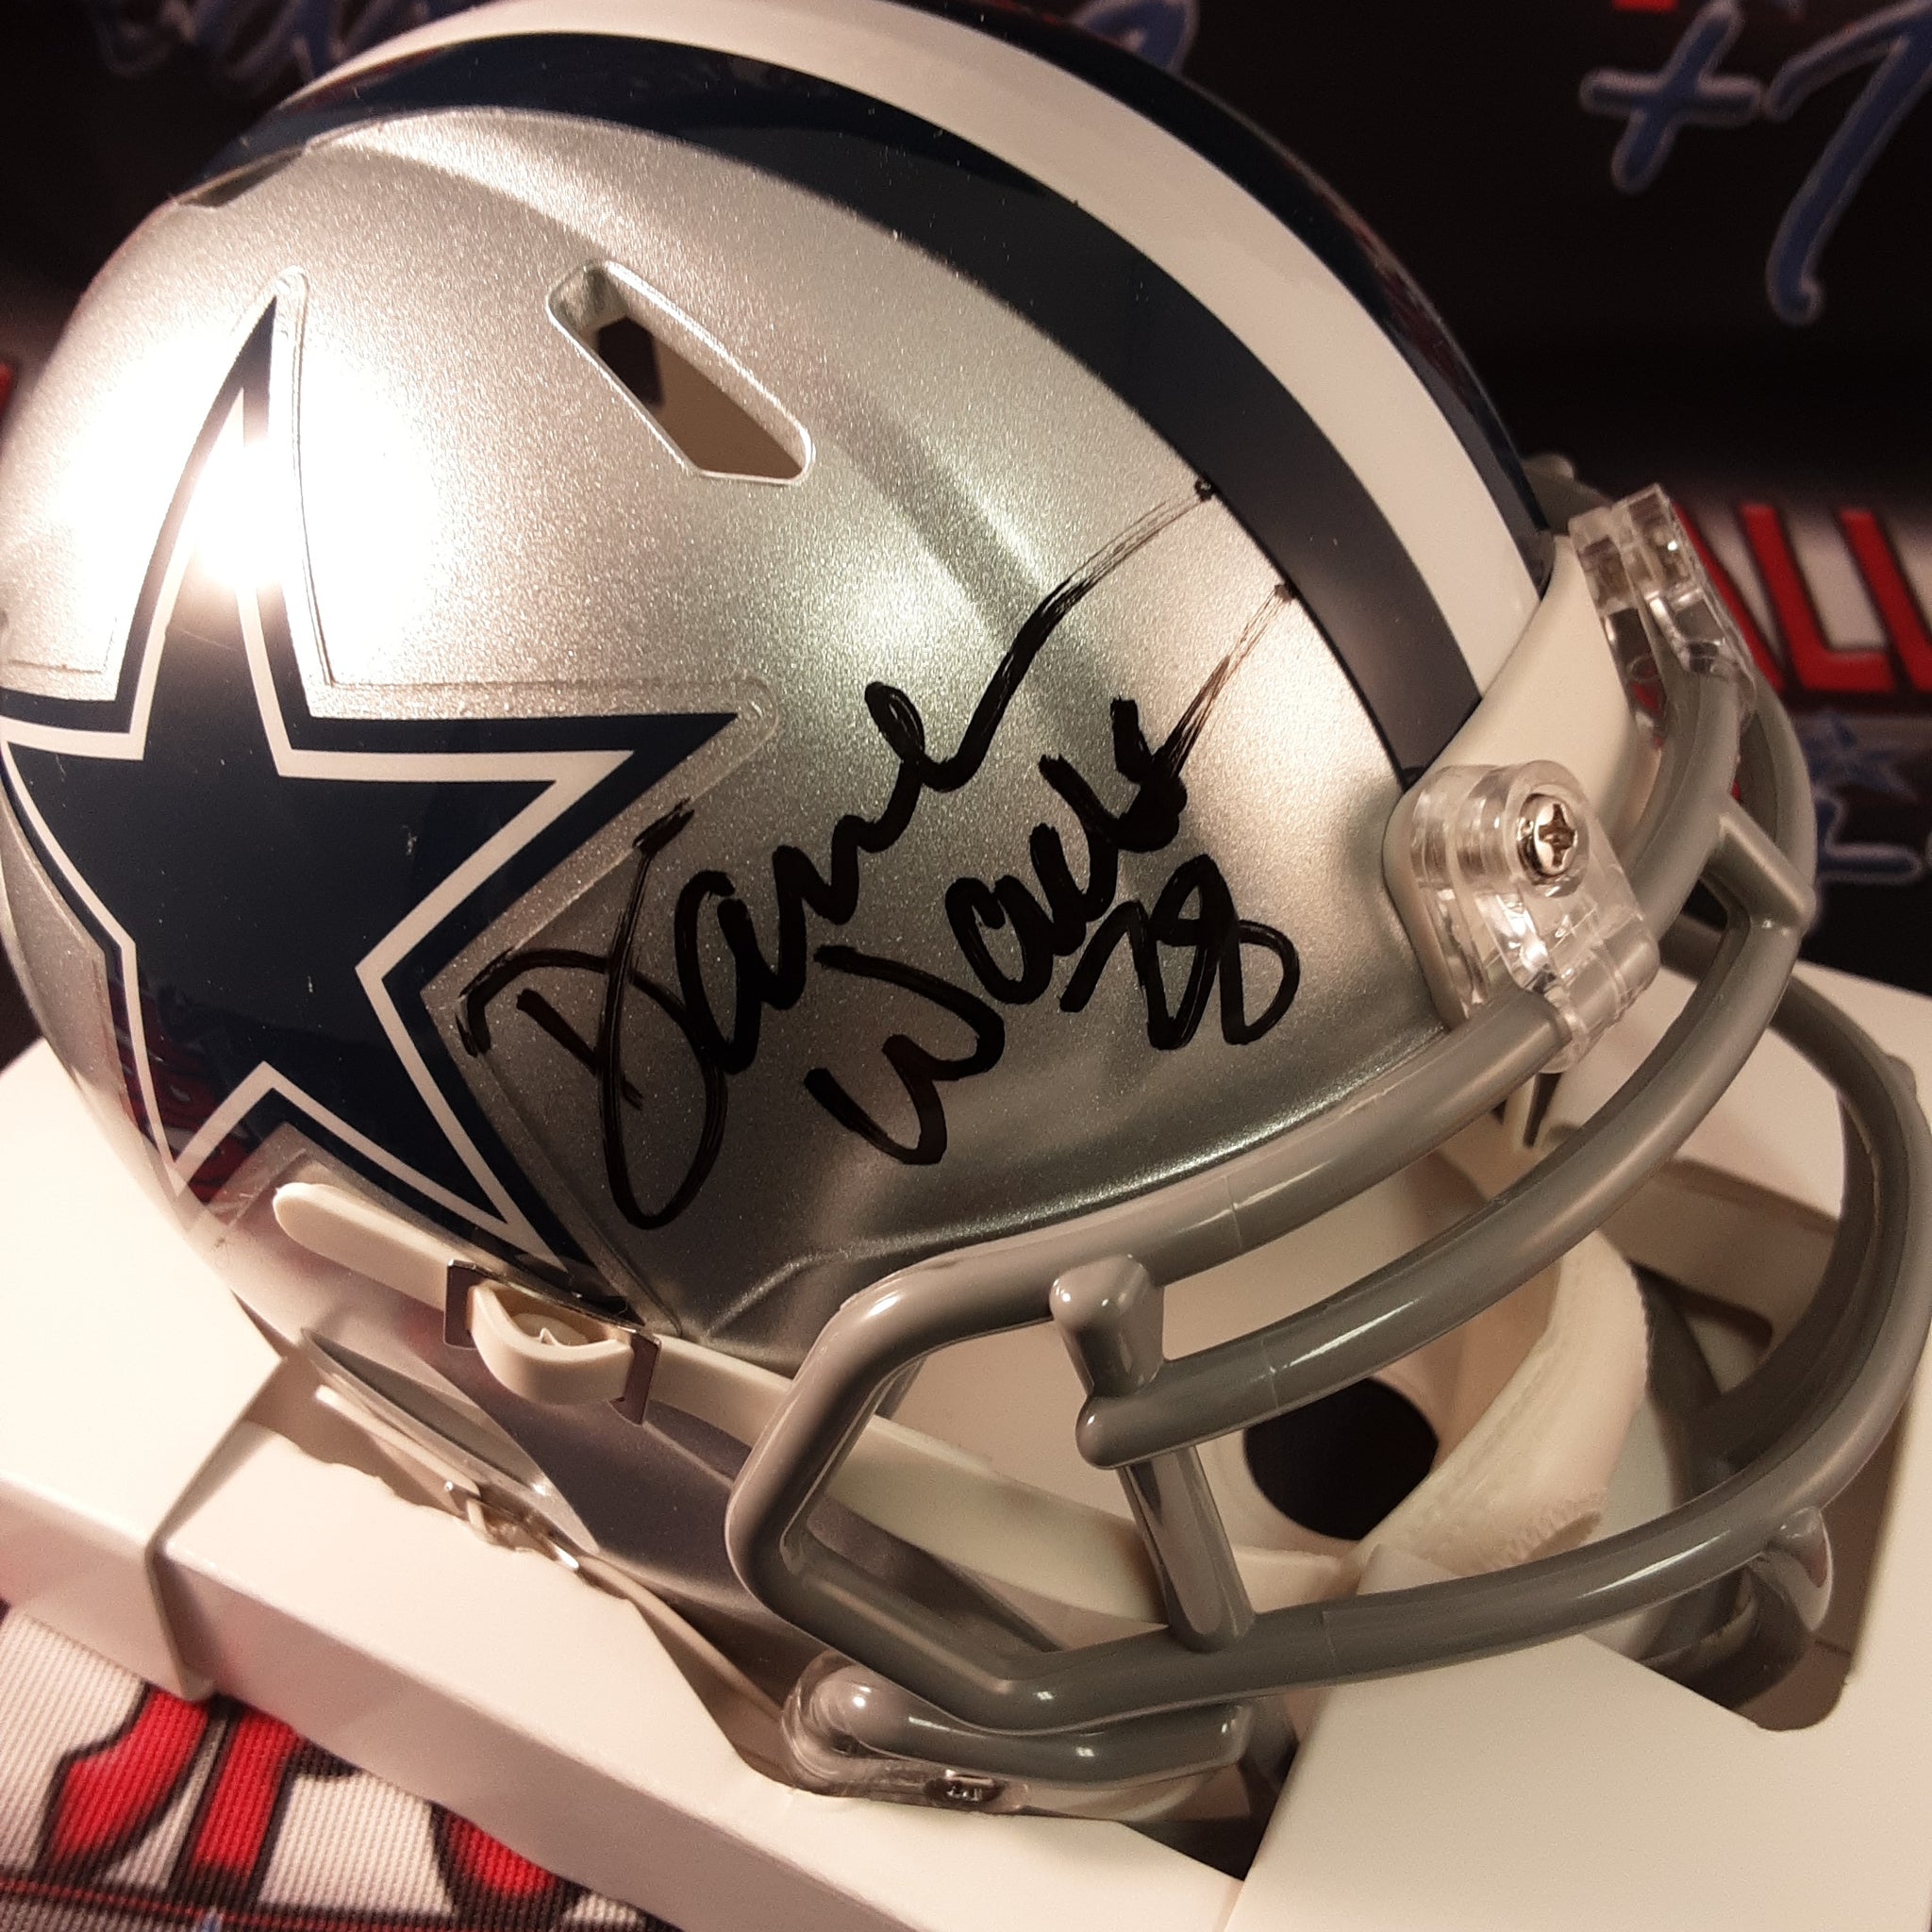 Darren Woodson Authentic Signed Autographed Mini Helmet JSA.